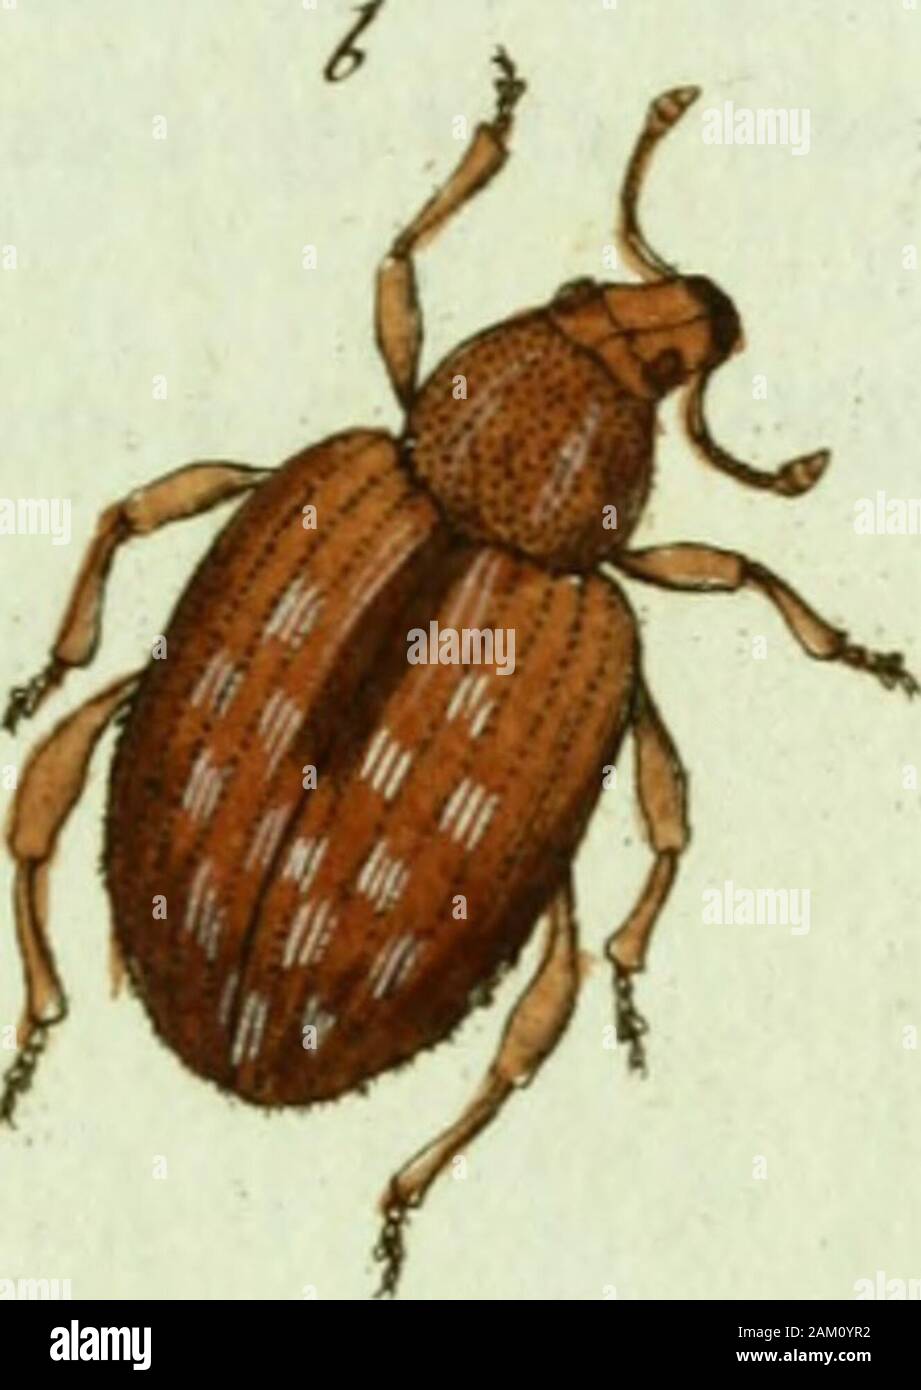 Favnae insectorvm Germanicae initia, oder, Deutschlands Insecten . J.öt CVRCVLIO Arundinig.Je. Der Schilfrohr Rüfselkäfcr. Curcullo Arunclinis ihorace : brevirostris lutescens, duabus lineis. dorsalibusfuscis Tissu. Ent. Syst. T. II. n.2o/j. p. 464.. Paykull. eure, Monogr. 47" 44" auf Arundo Phragmites L. um Braunschwei&Lt ; ?, vom Hrn. Le professeur Hcll-mitgetheilt gefalligst perruque daselbst. Les RH. Pr. Krioch Fiüfselkäferwohl diesem hat den Namen C. luteus zugedacht, aber Doch nicht in seinen senneur vor-treflichen InseiktengeschicJite trügen Bey zur erwähnt" a. Natürliche Grösse, b. Vergrösserung.. Cutcu Banque D'Images